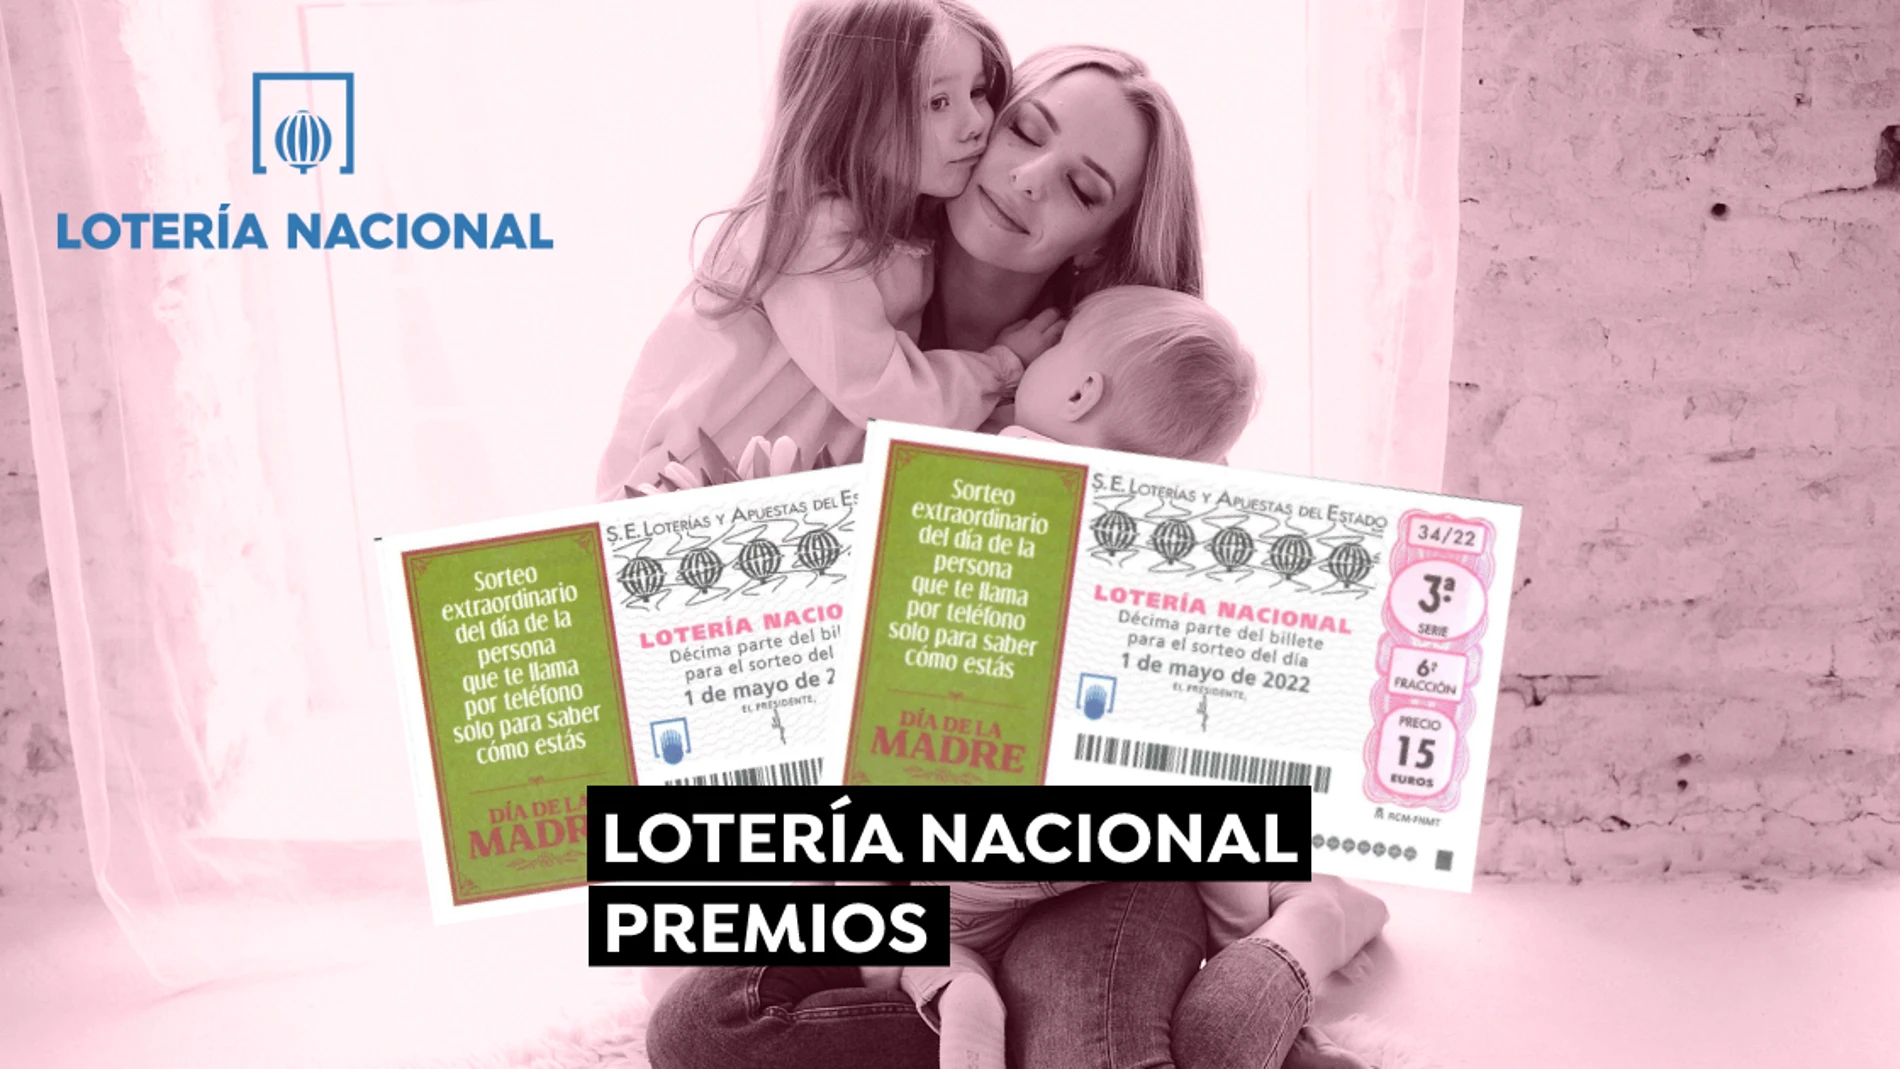 Premios del Sorteo Extraordinario del Día de la Madre de Lotería Nacional